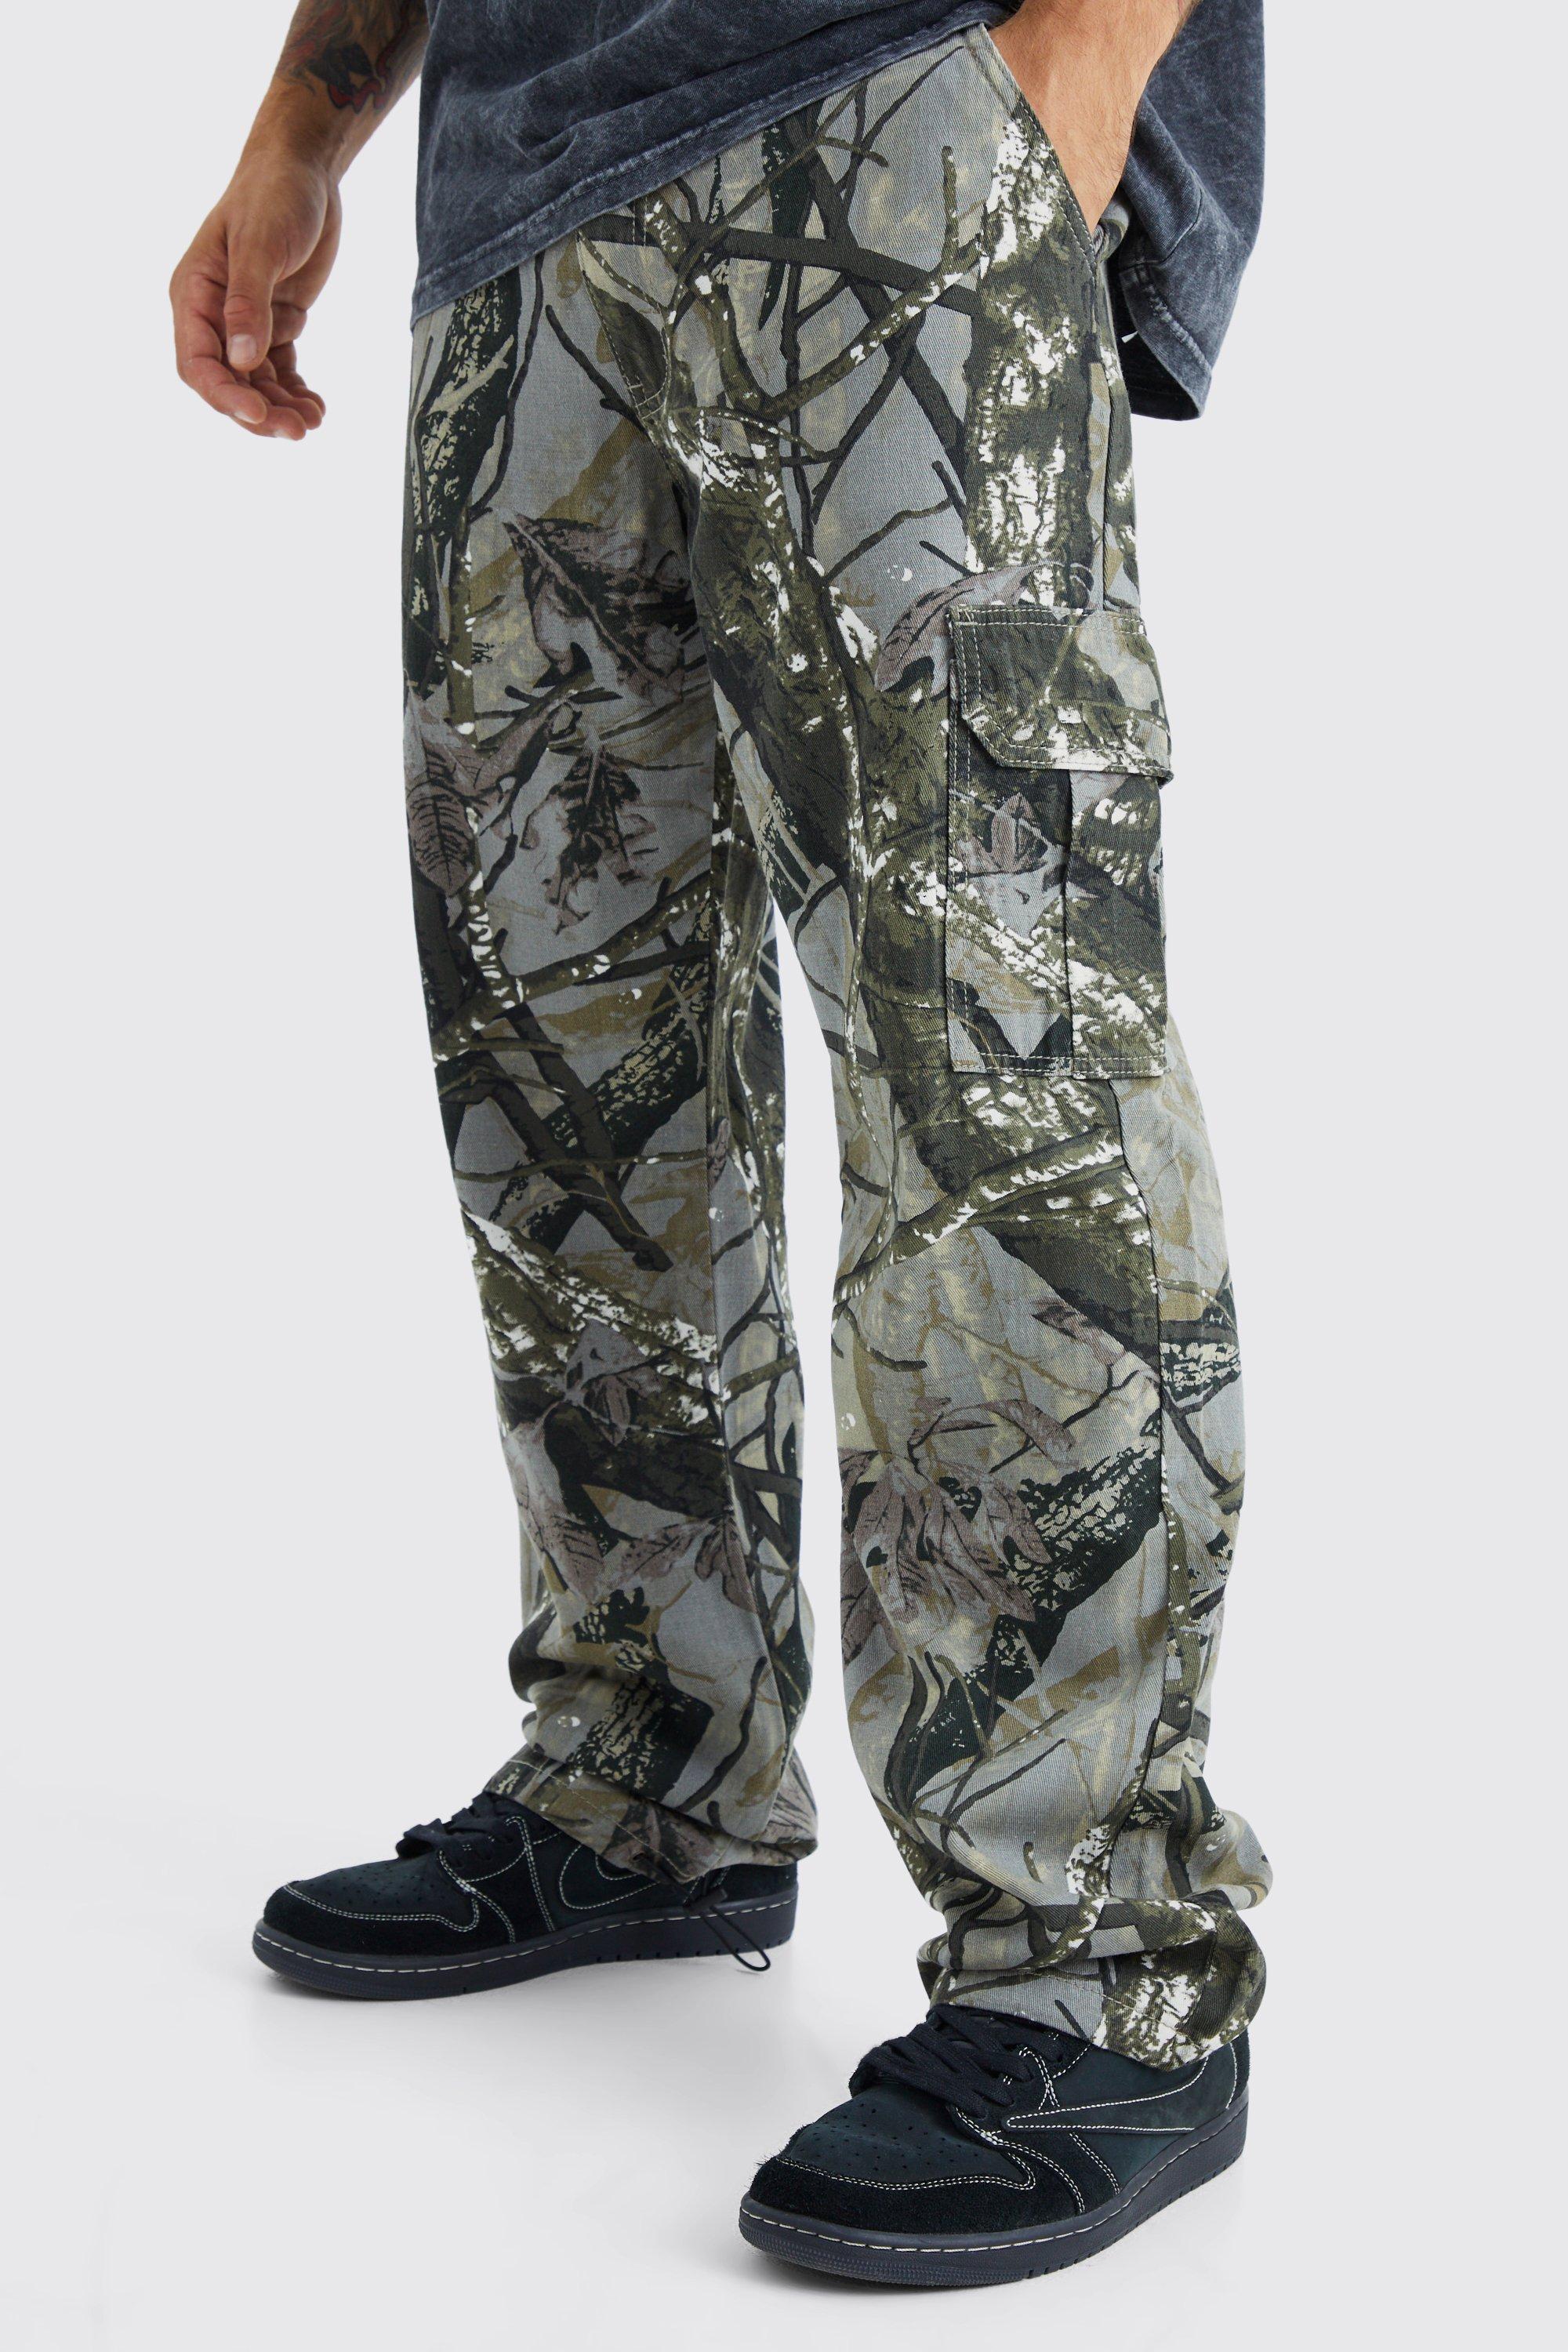 pantalon cargo large imprimé camouflage homme - beige - 28, beige